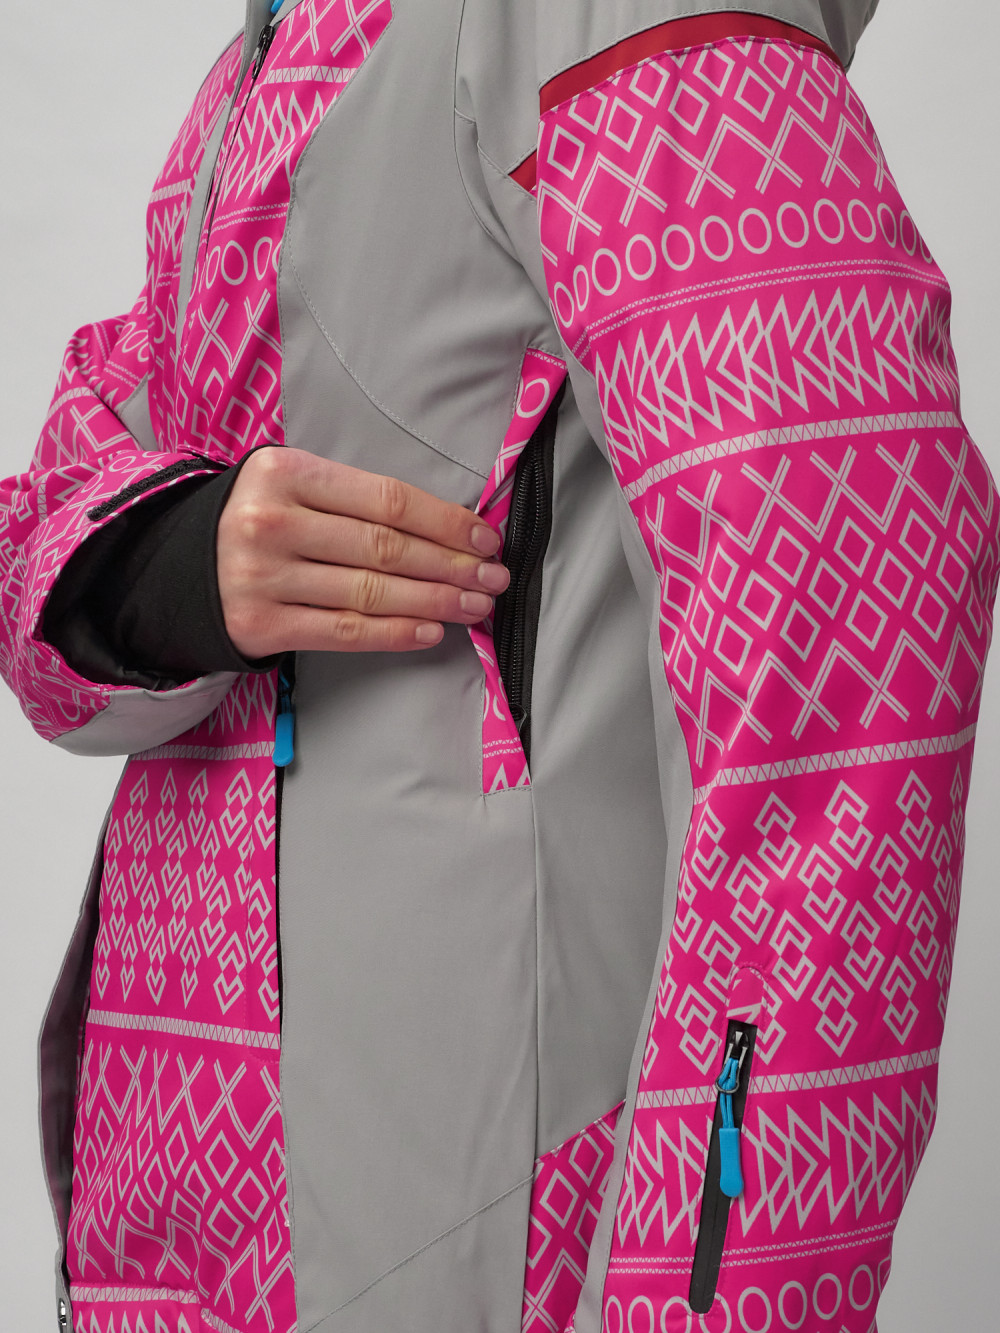 Купить горнолыжный костюм женский оптом от производителя недорого в Москве 02272R 1